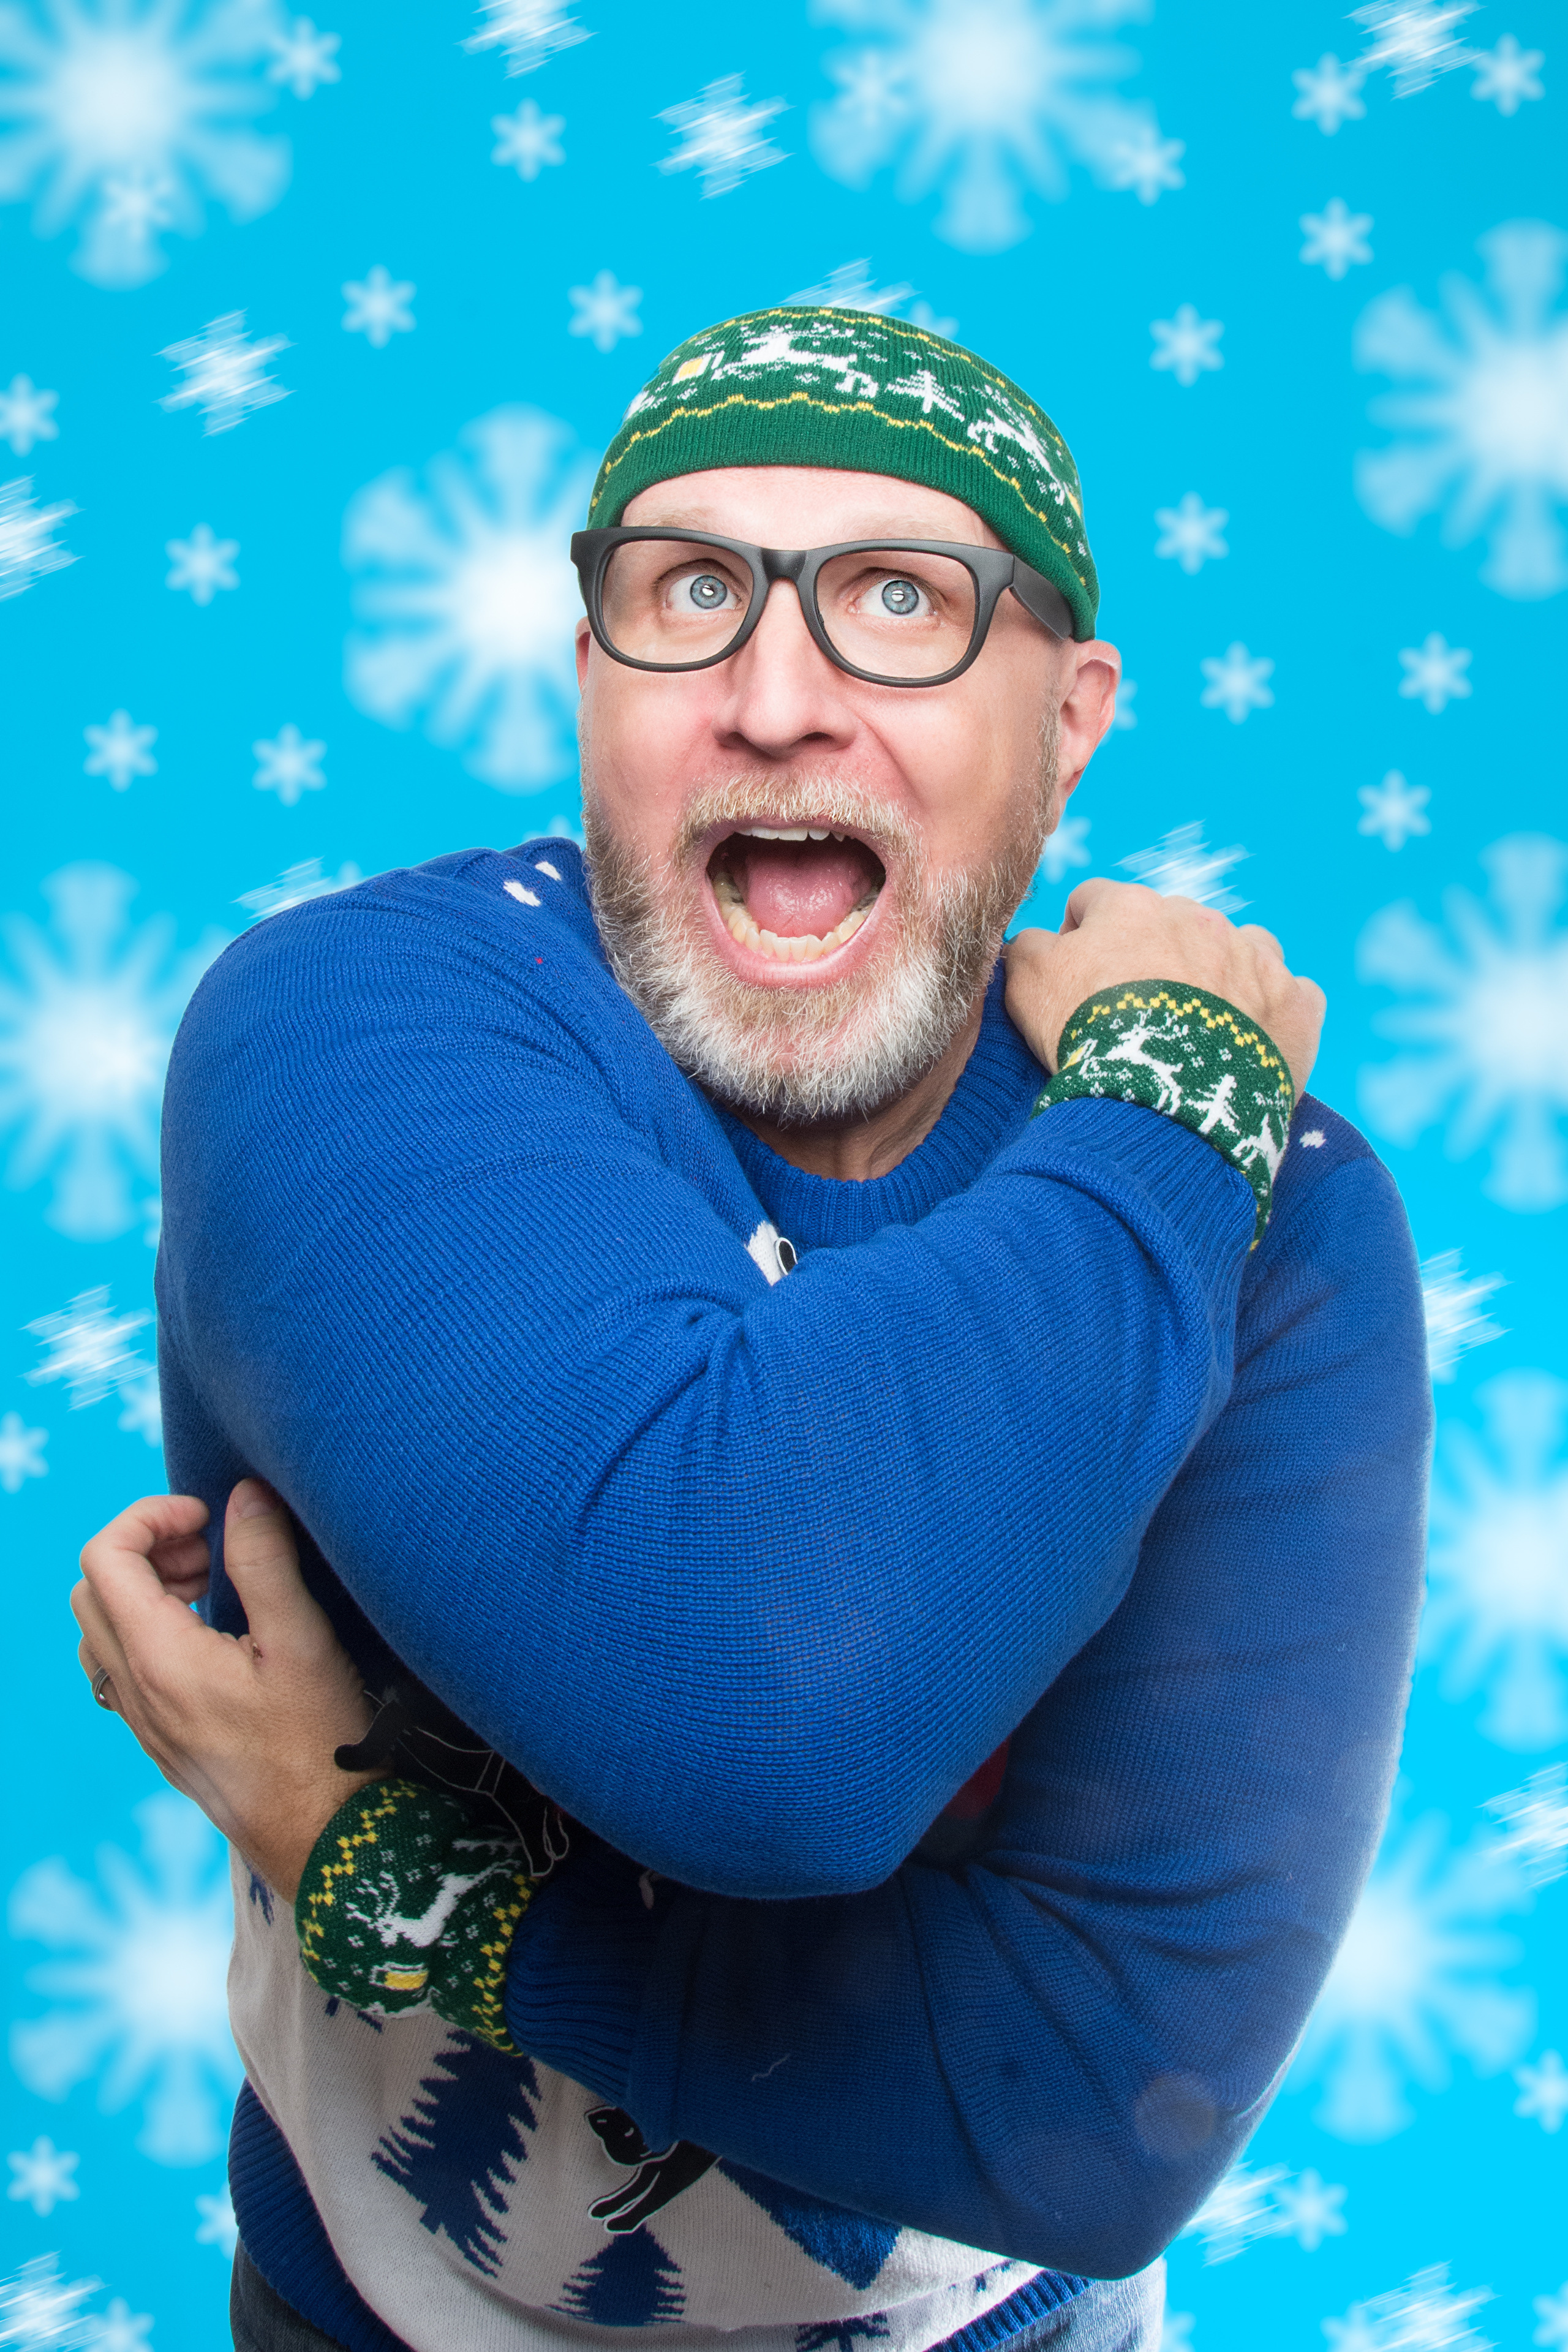 Картинки Новый год Мужчины эмоции изумление Шапки Снежинки Свитер Очки Руки 2560x3840 для мобильного телефона Рождество мужчина удивлен удивлена Удивление шапка в шапке снежинка свитере свитера рука очков очках